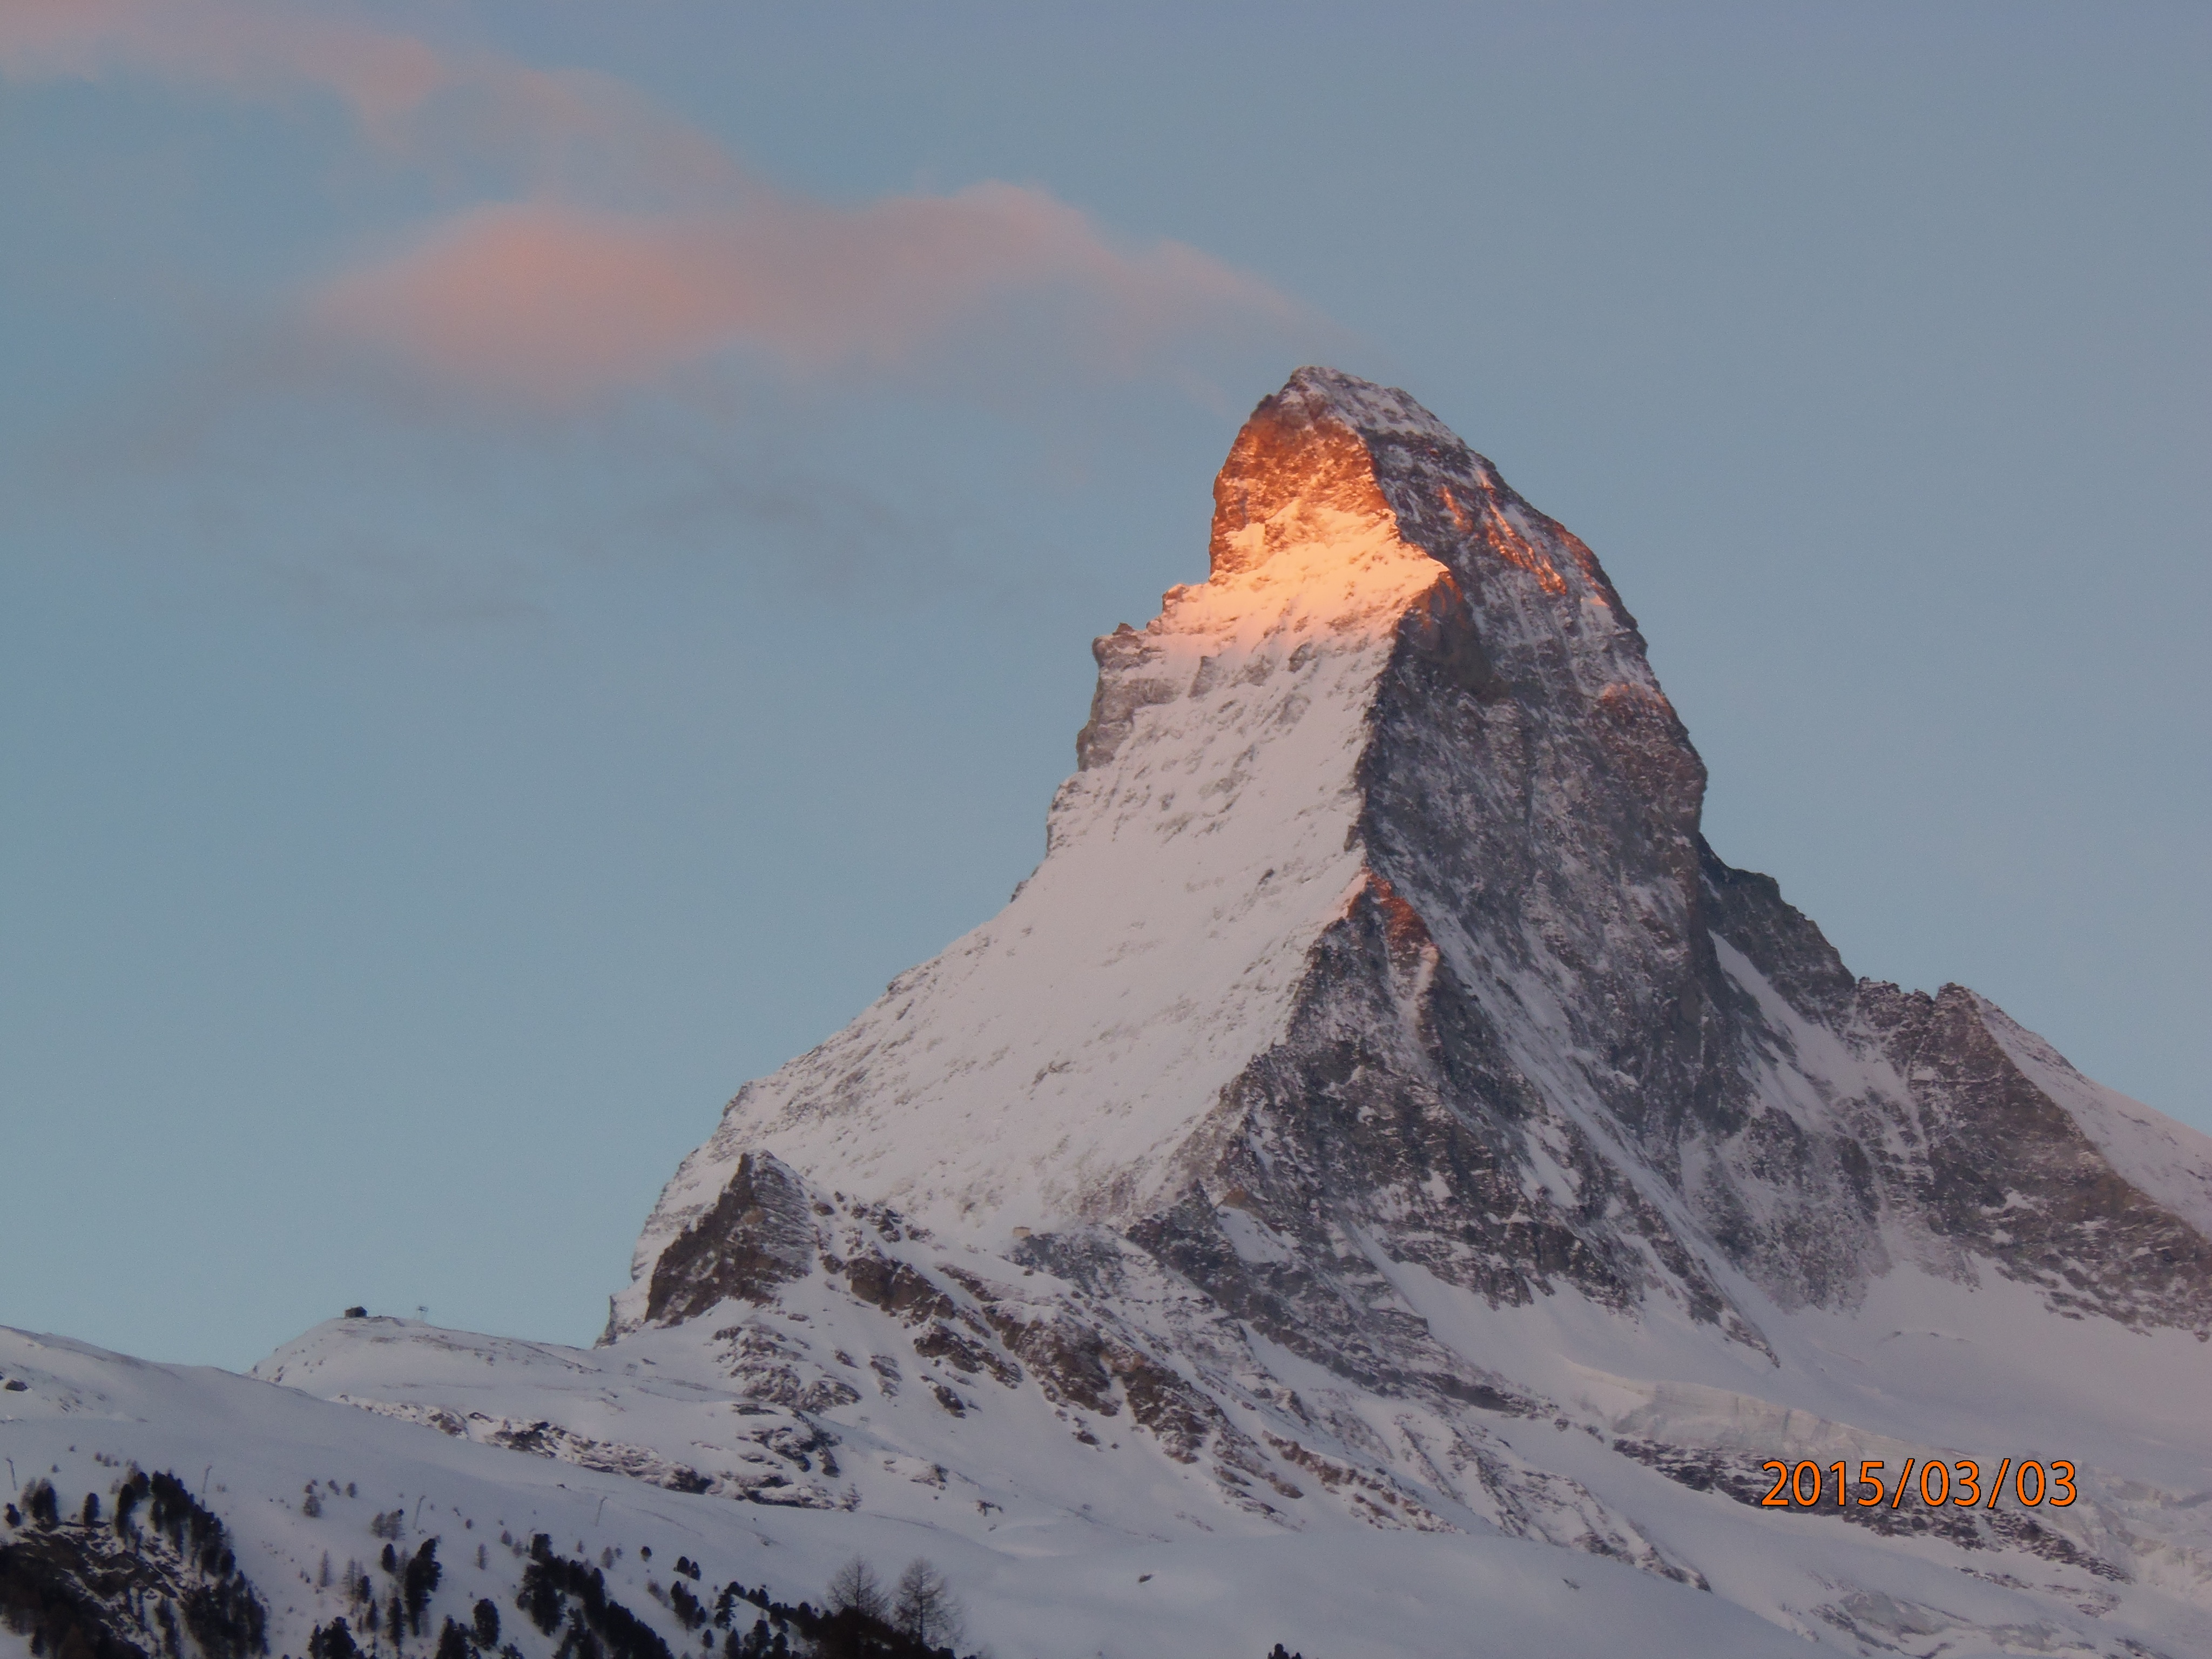 Matterhorn on fire, Zermatt